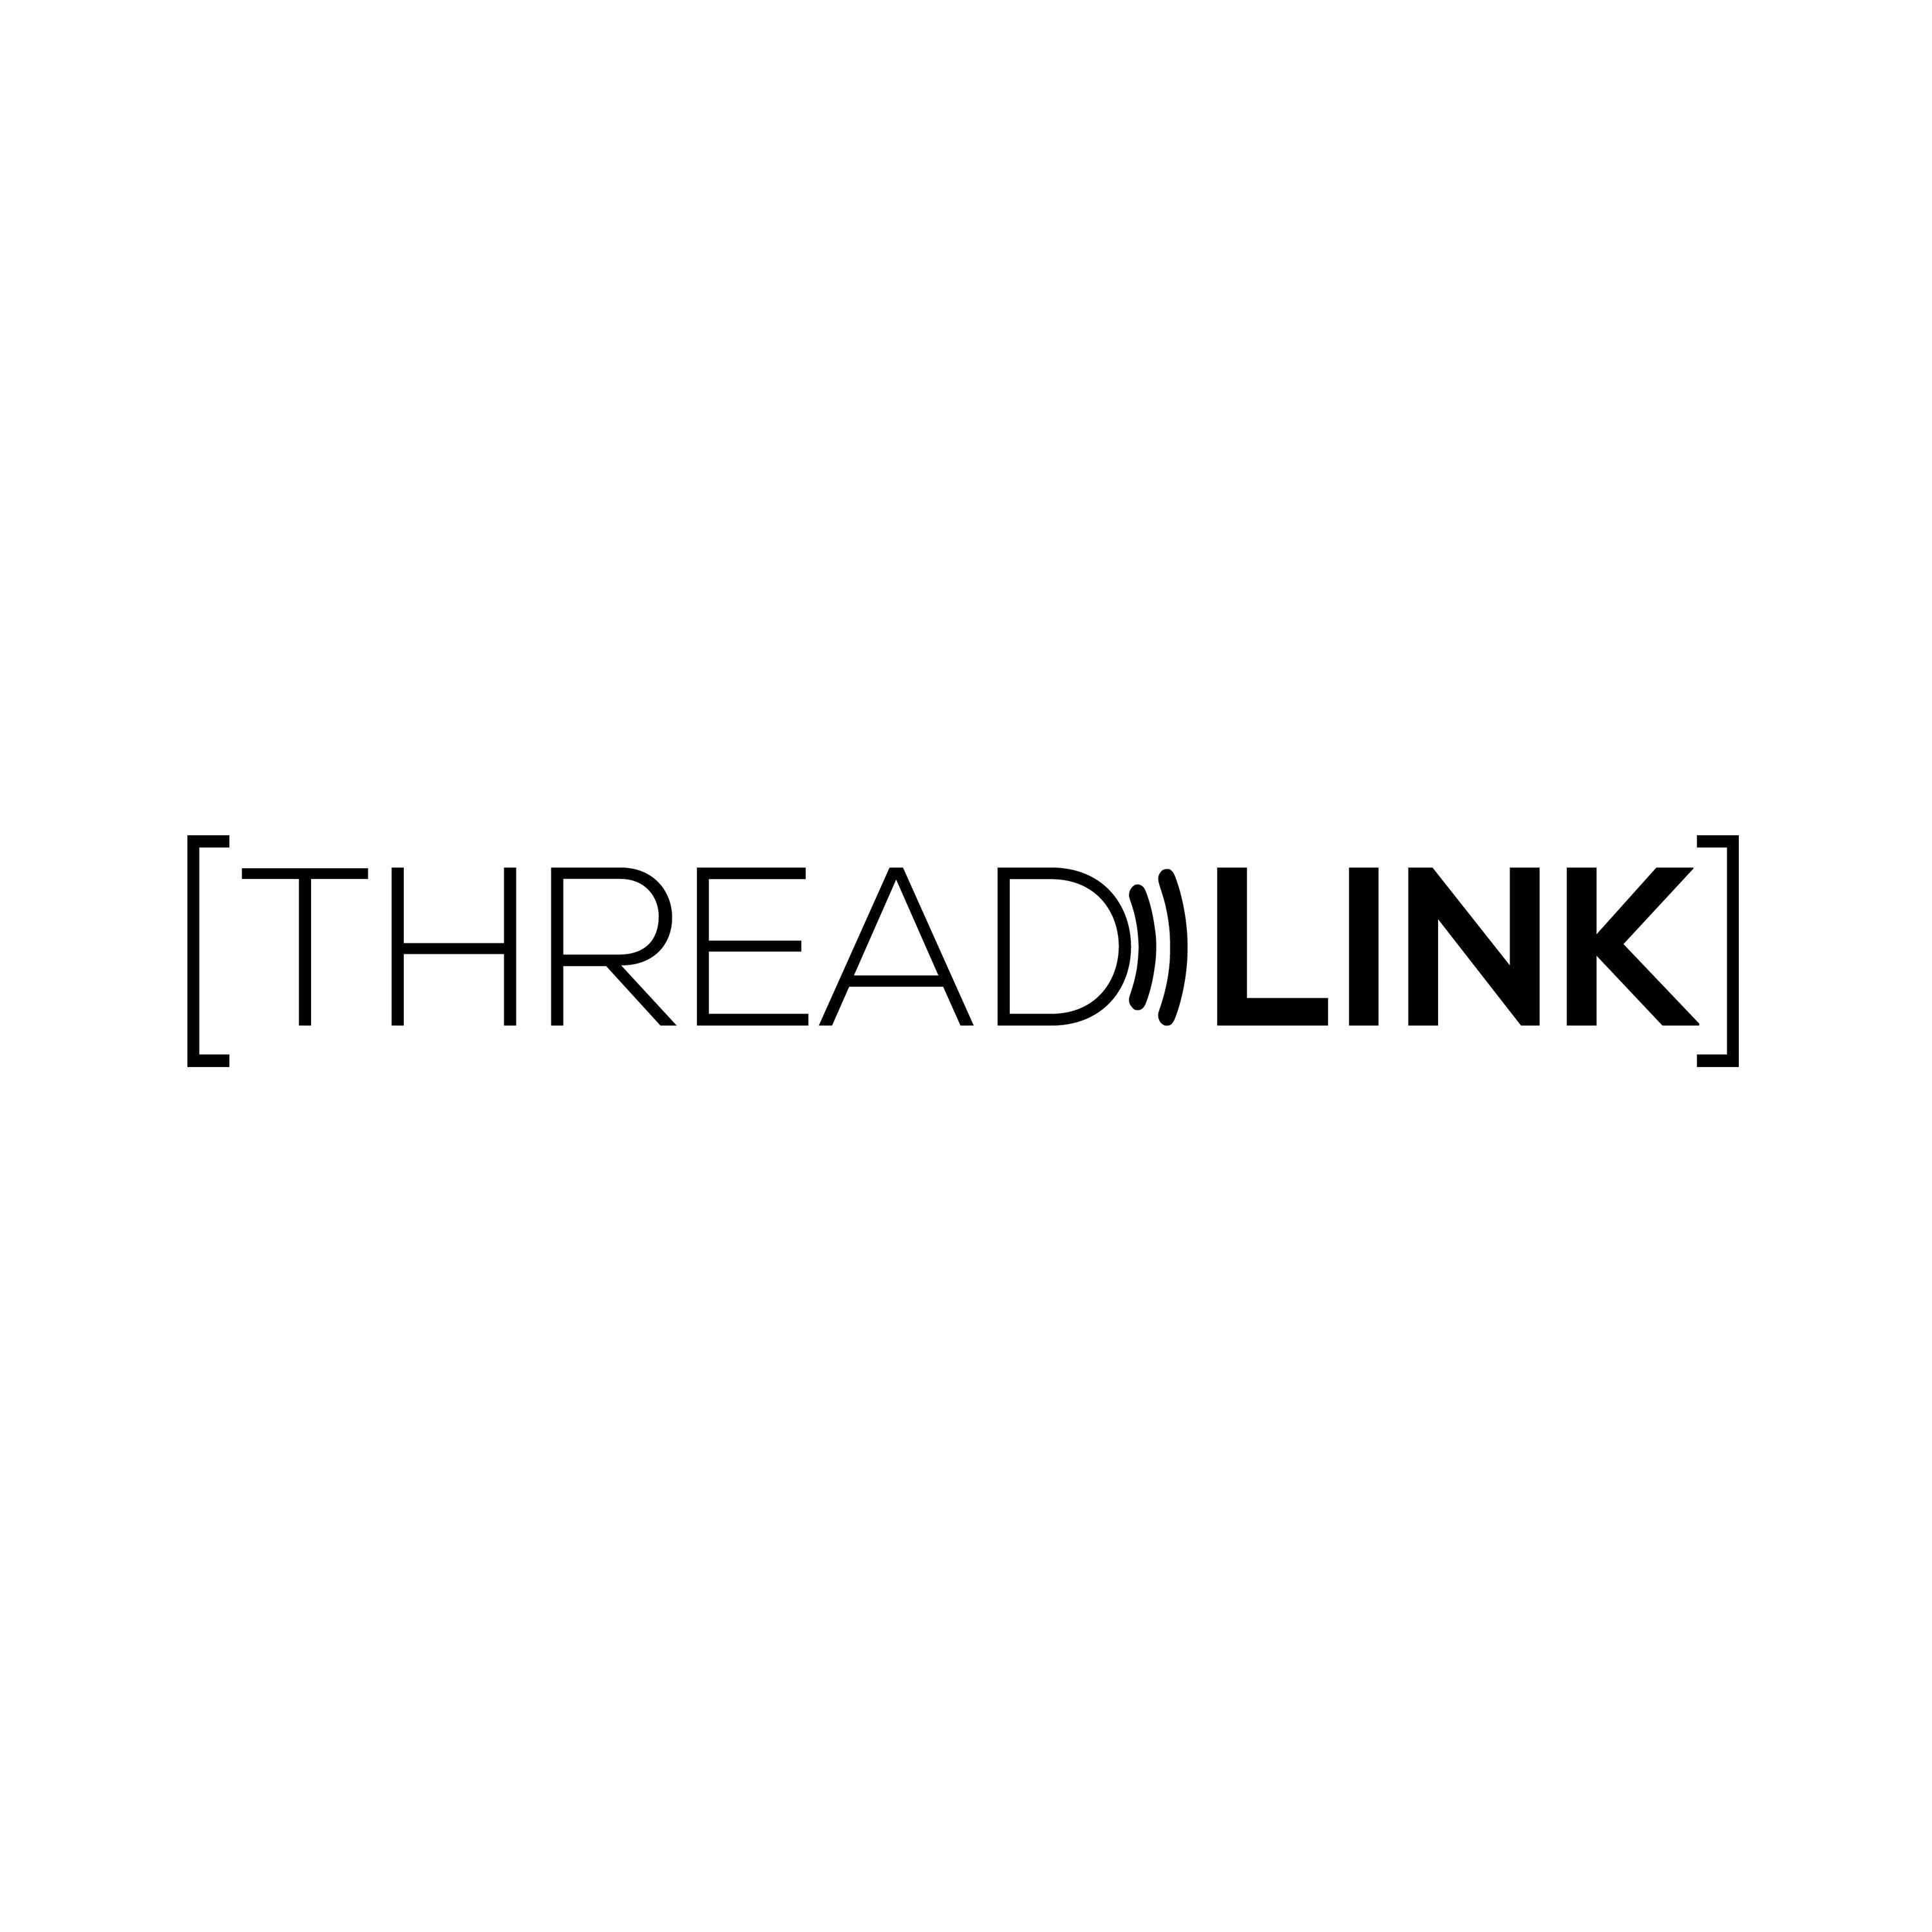 ThreadLink ThreadLink Clermont (407)664-1287